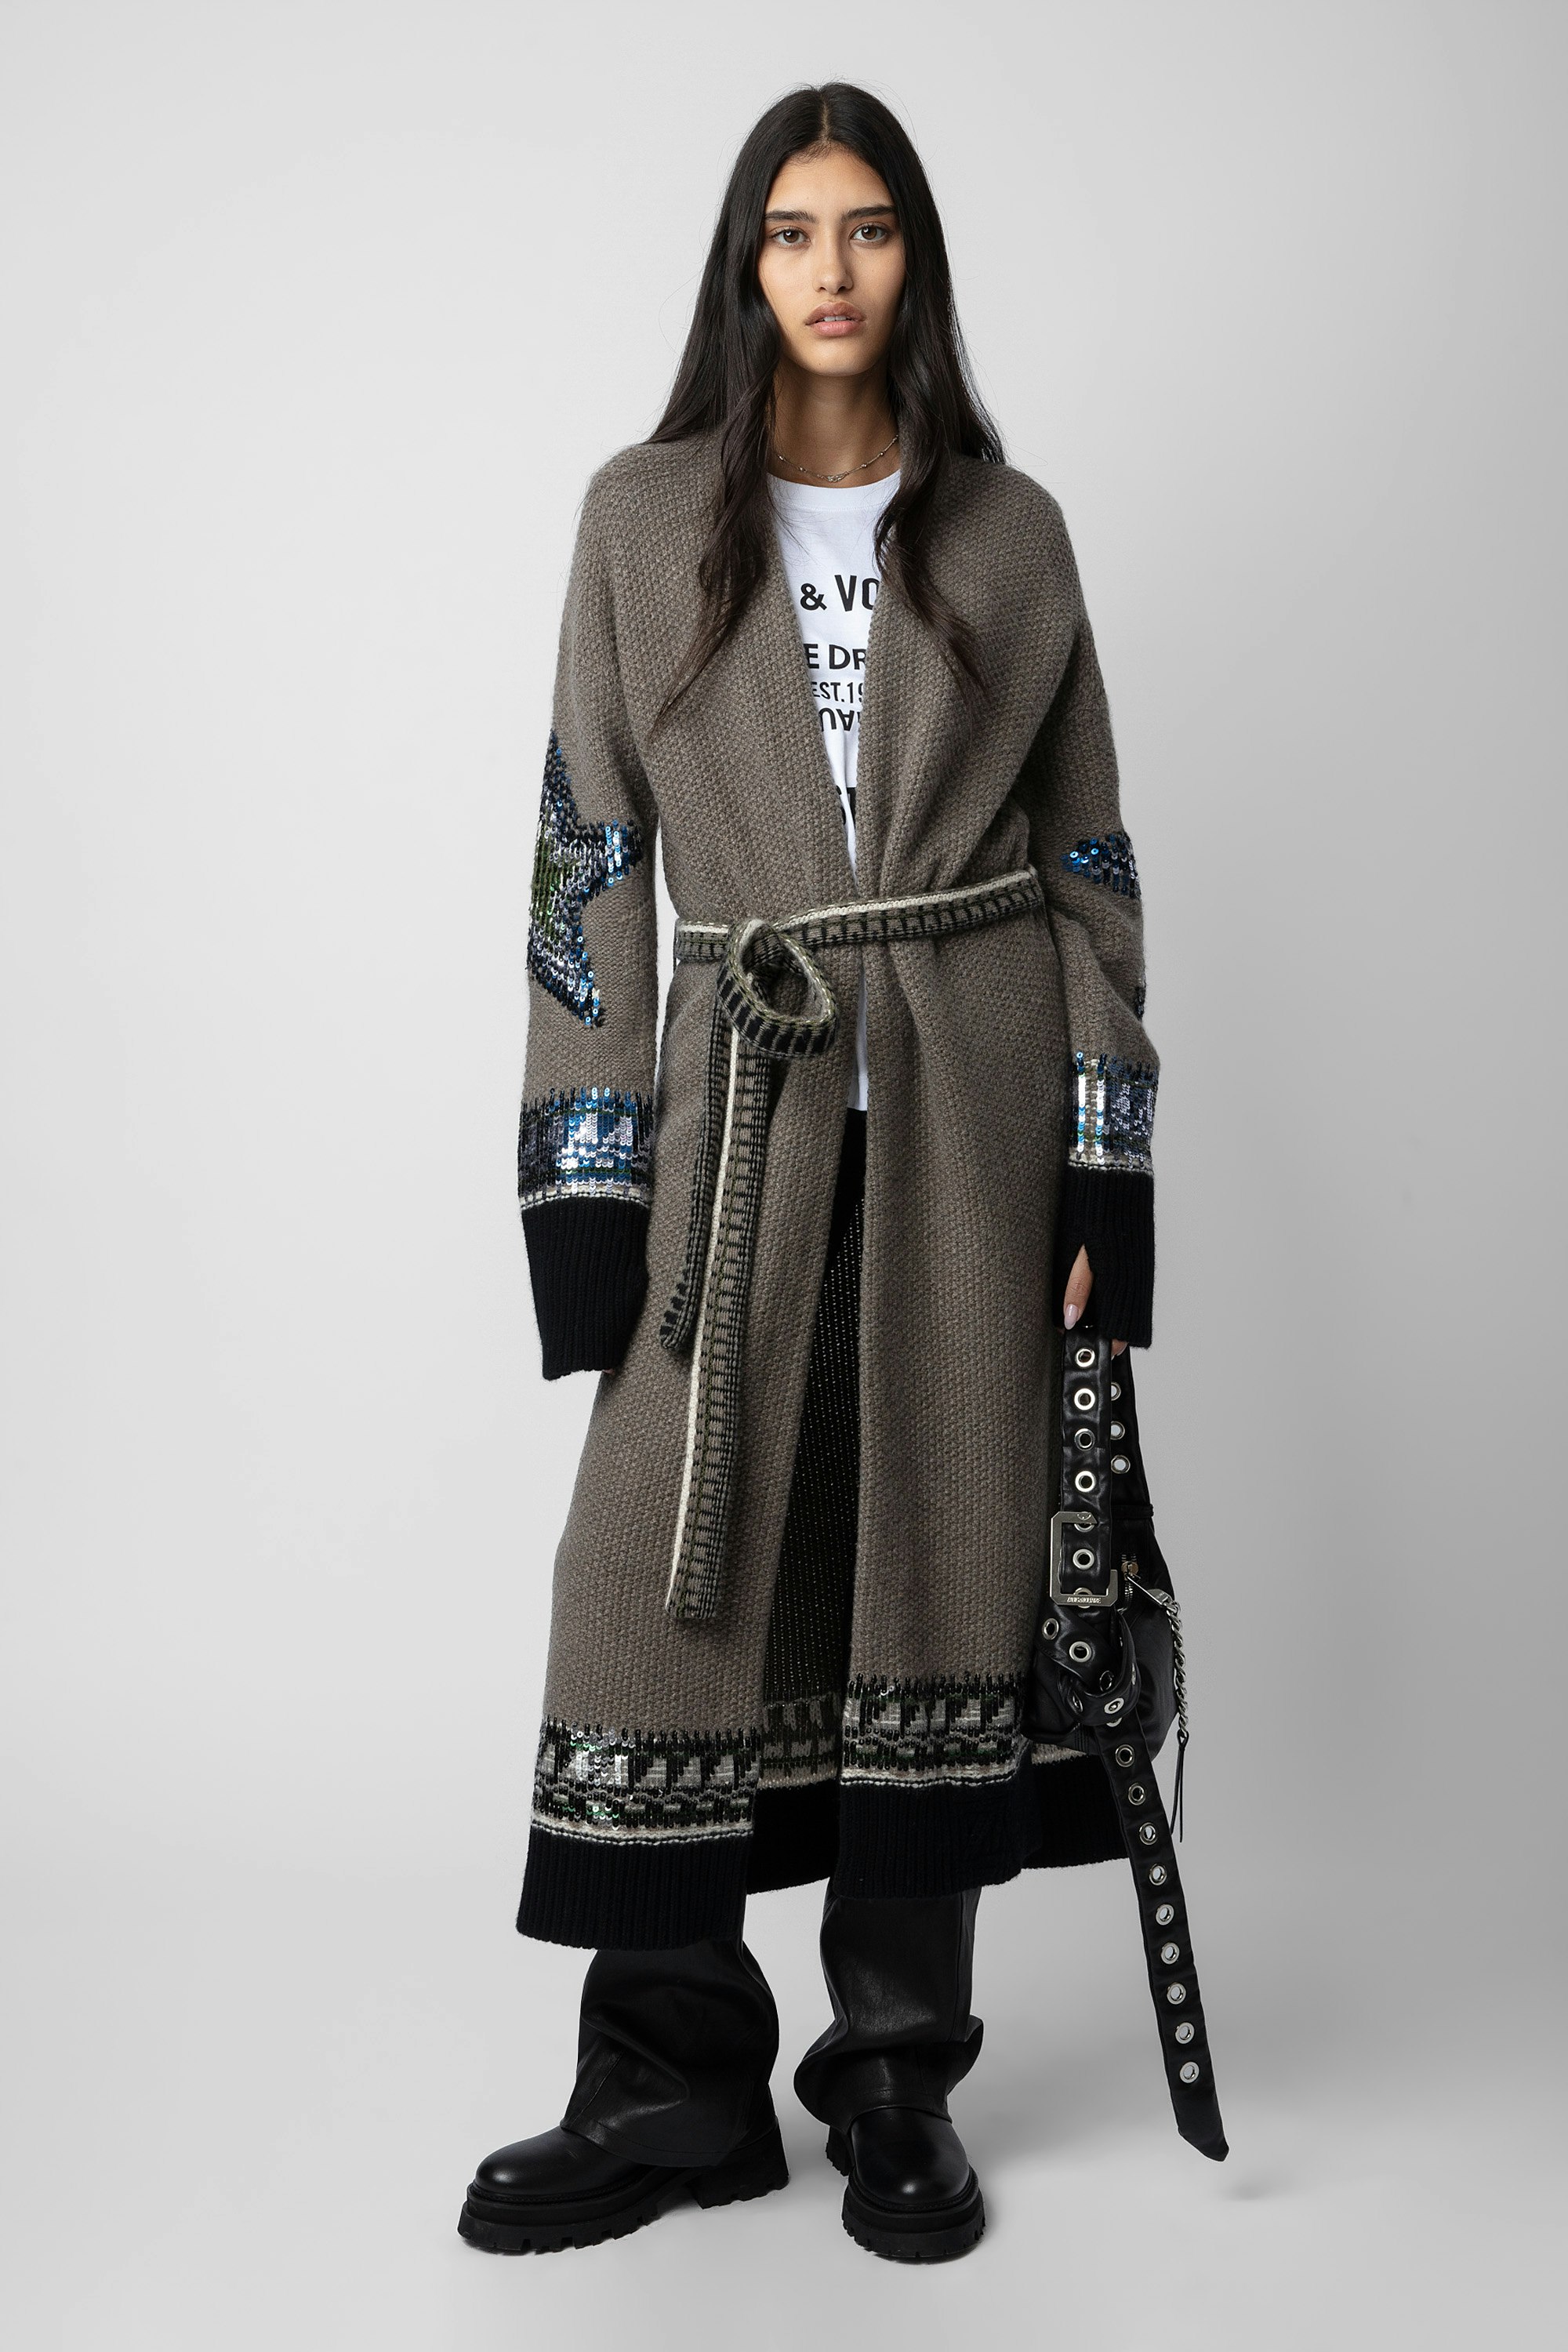 Gilet Rosanny Sequins Cachemire - Gilet manteau long en cachemire marron à ceinture, motifs étoiles et bandes rebrodées de sequins.